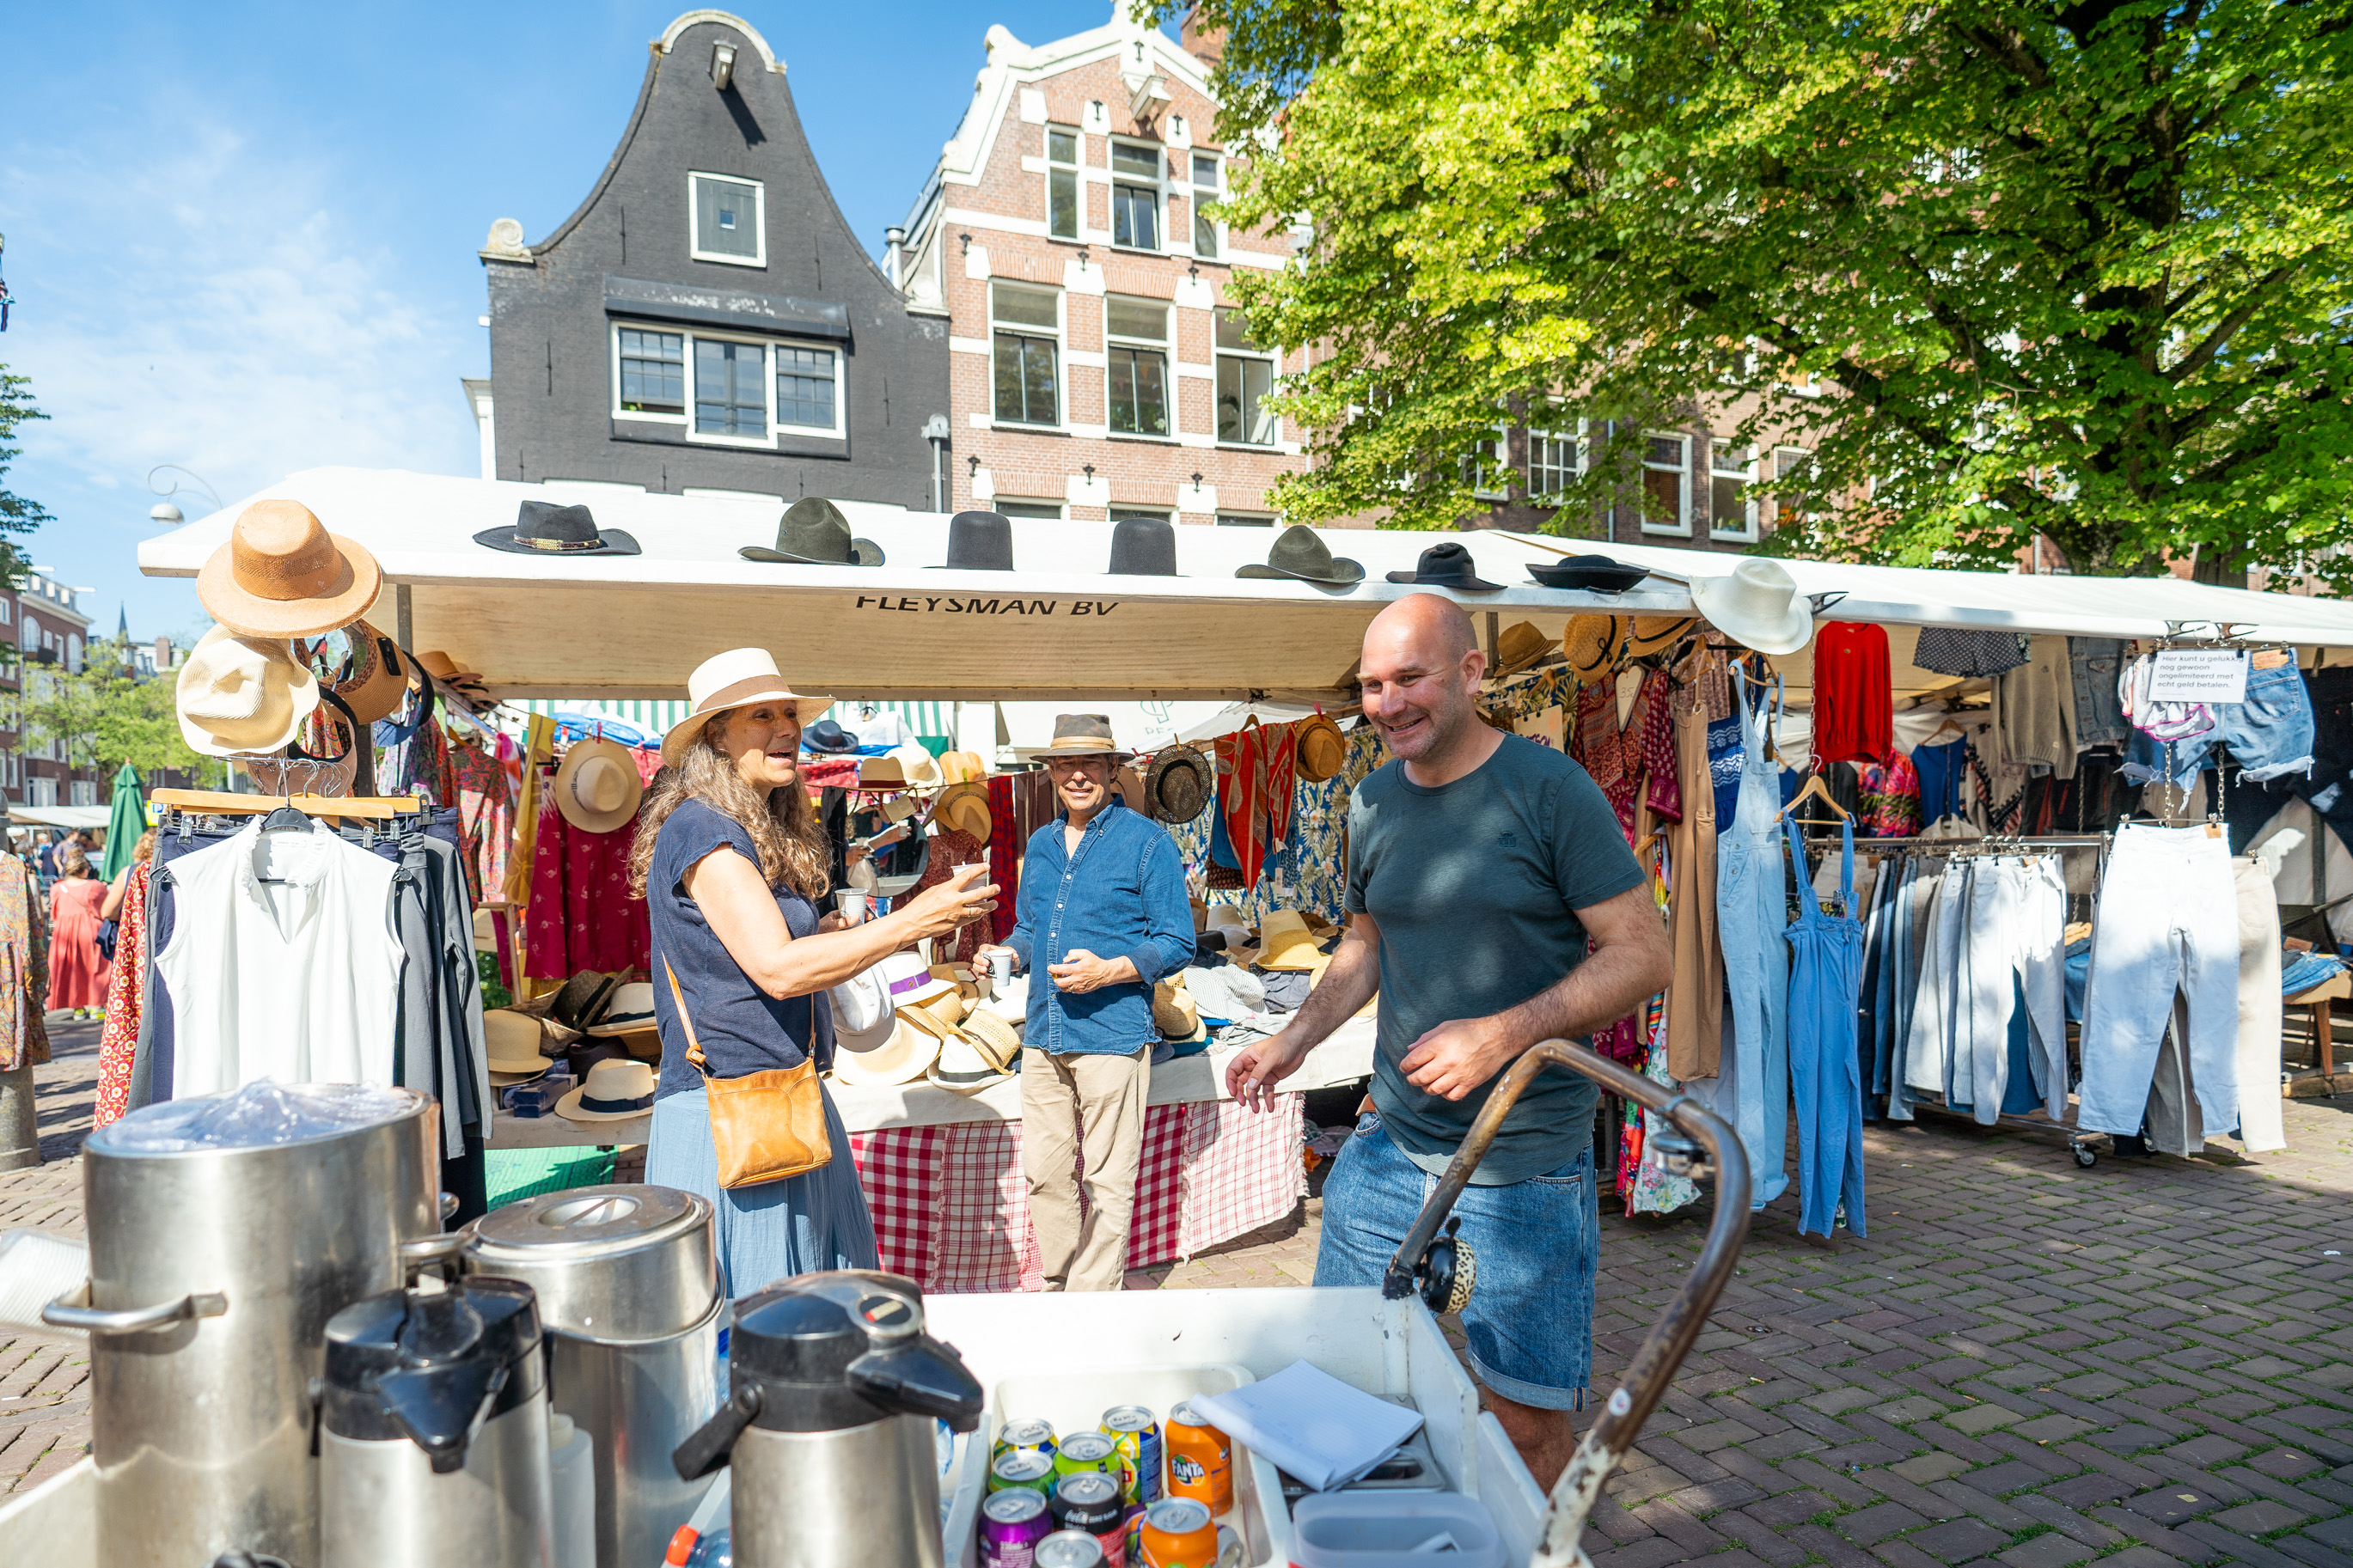 Media Markt Amsterdam Centrum neemt voorraad en naam Fame over - Digitailing